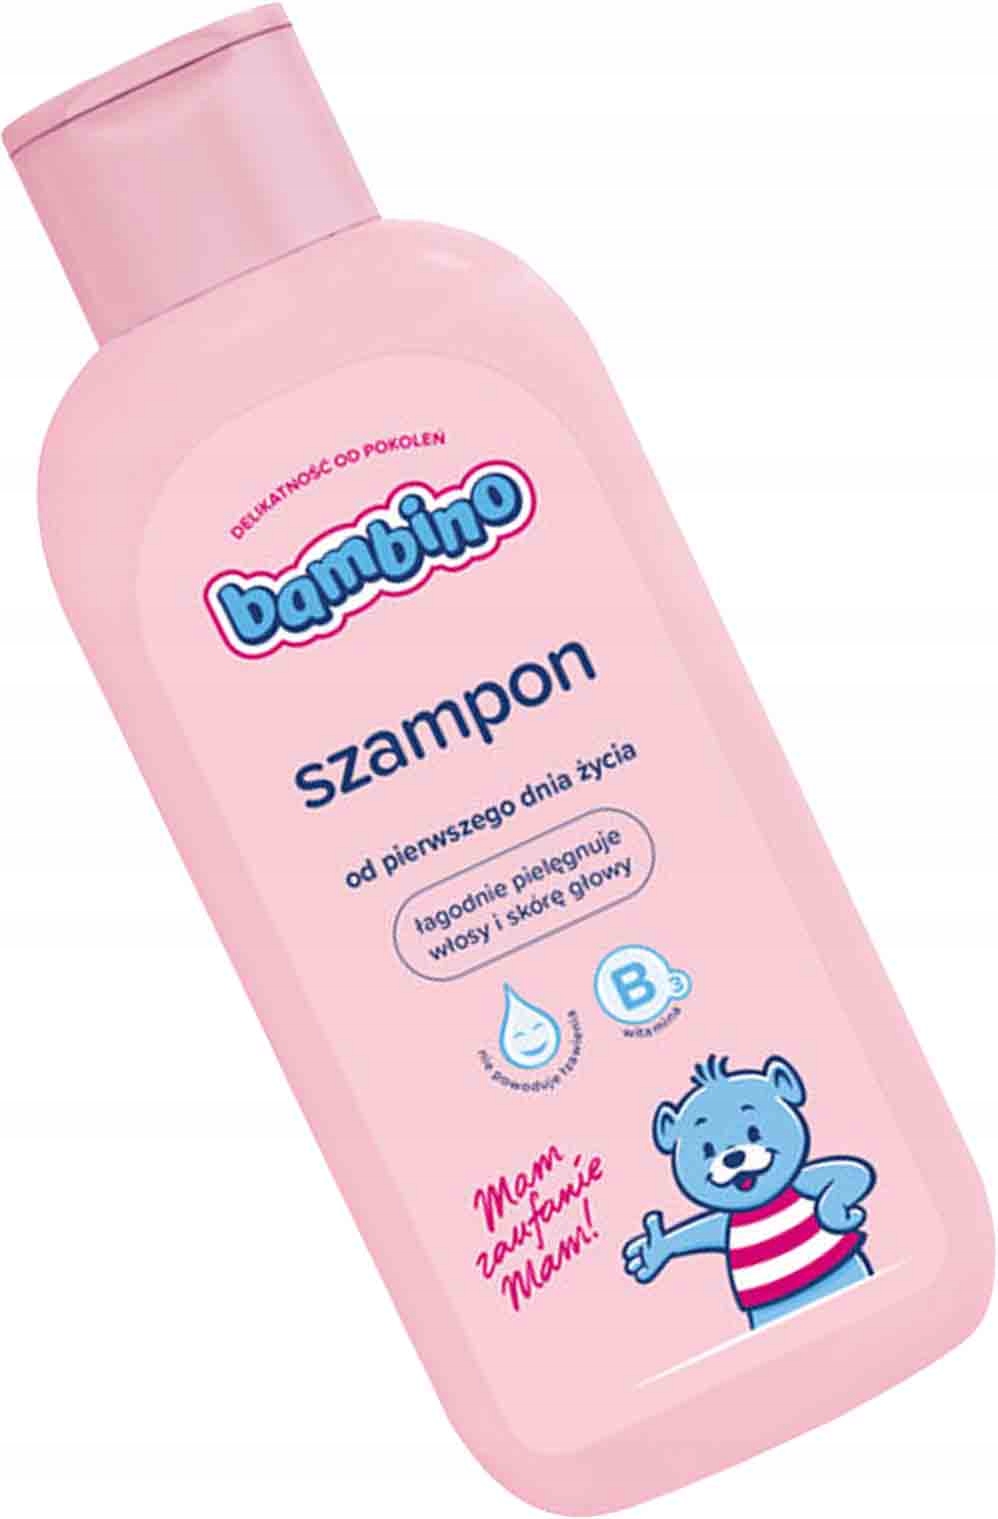 szampon dla dzieci opinie